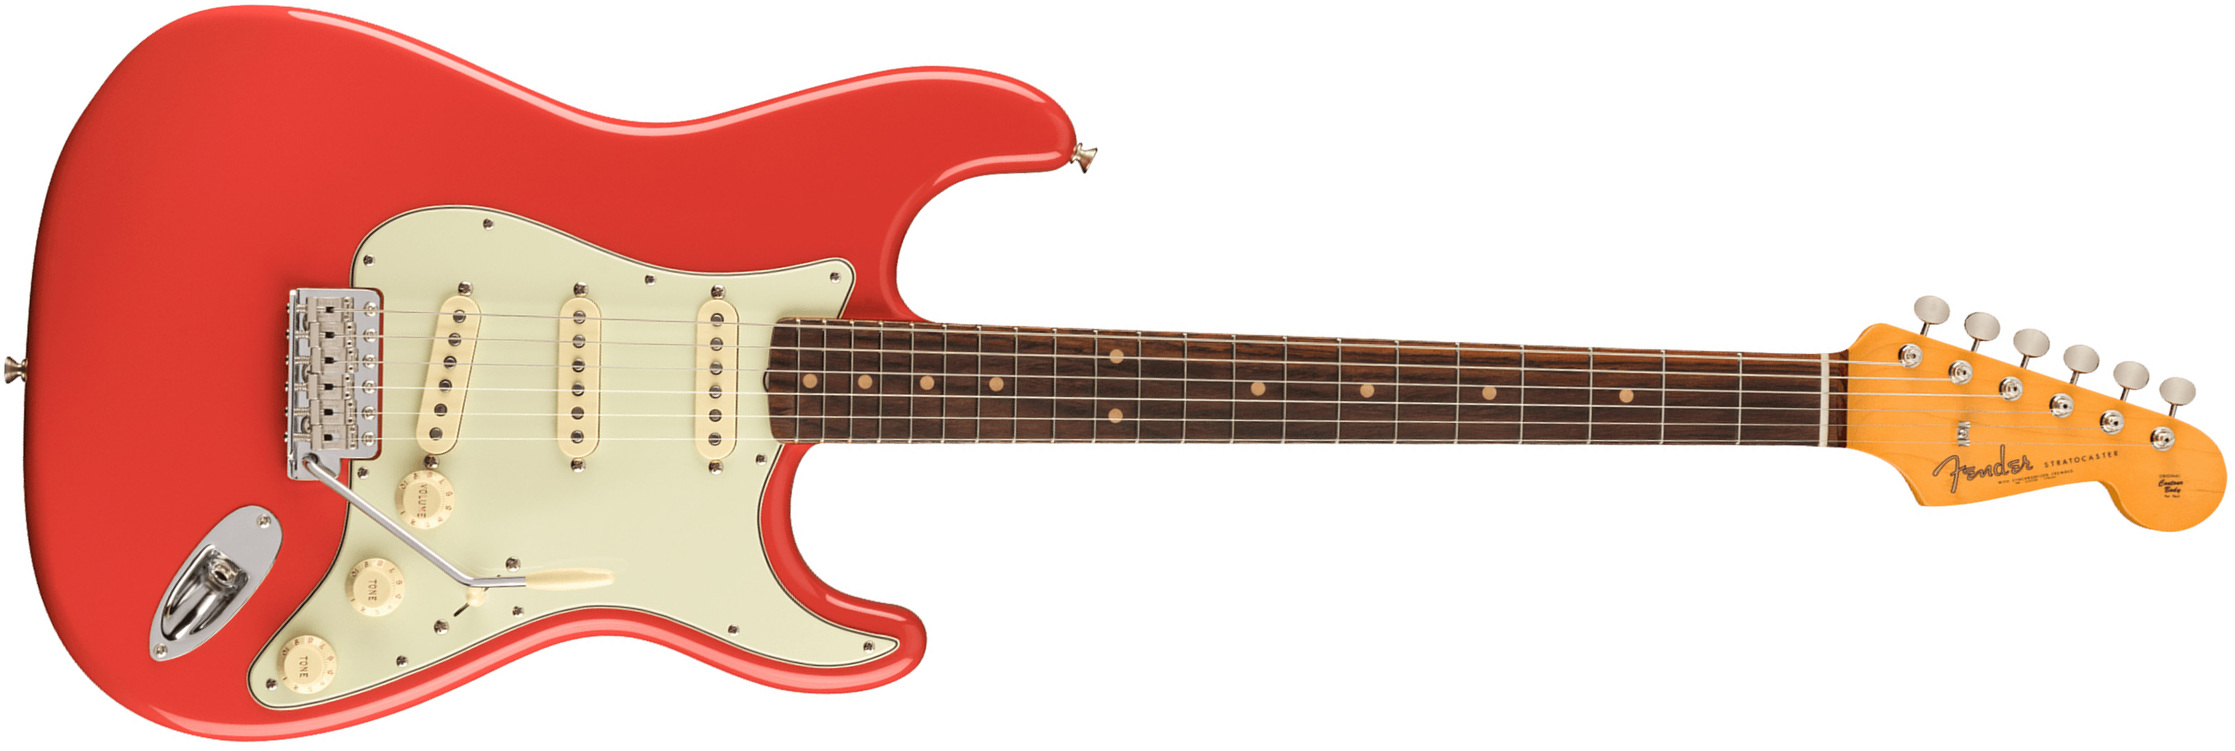 Fender Strat 1961 American Vintage Ii Usa 3s Trem Rw - Fiesta Red - Elektrische gitaar in Str-vorm - Main picture